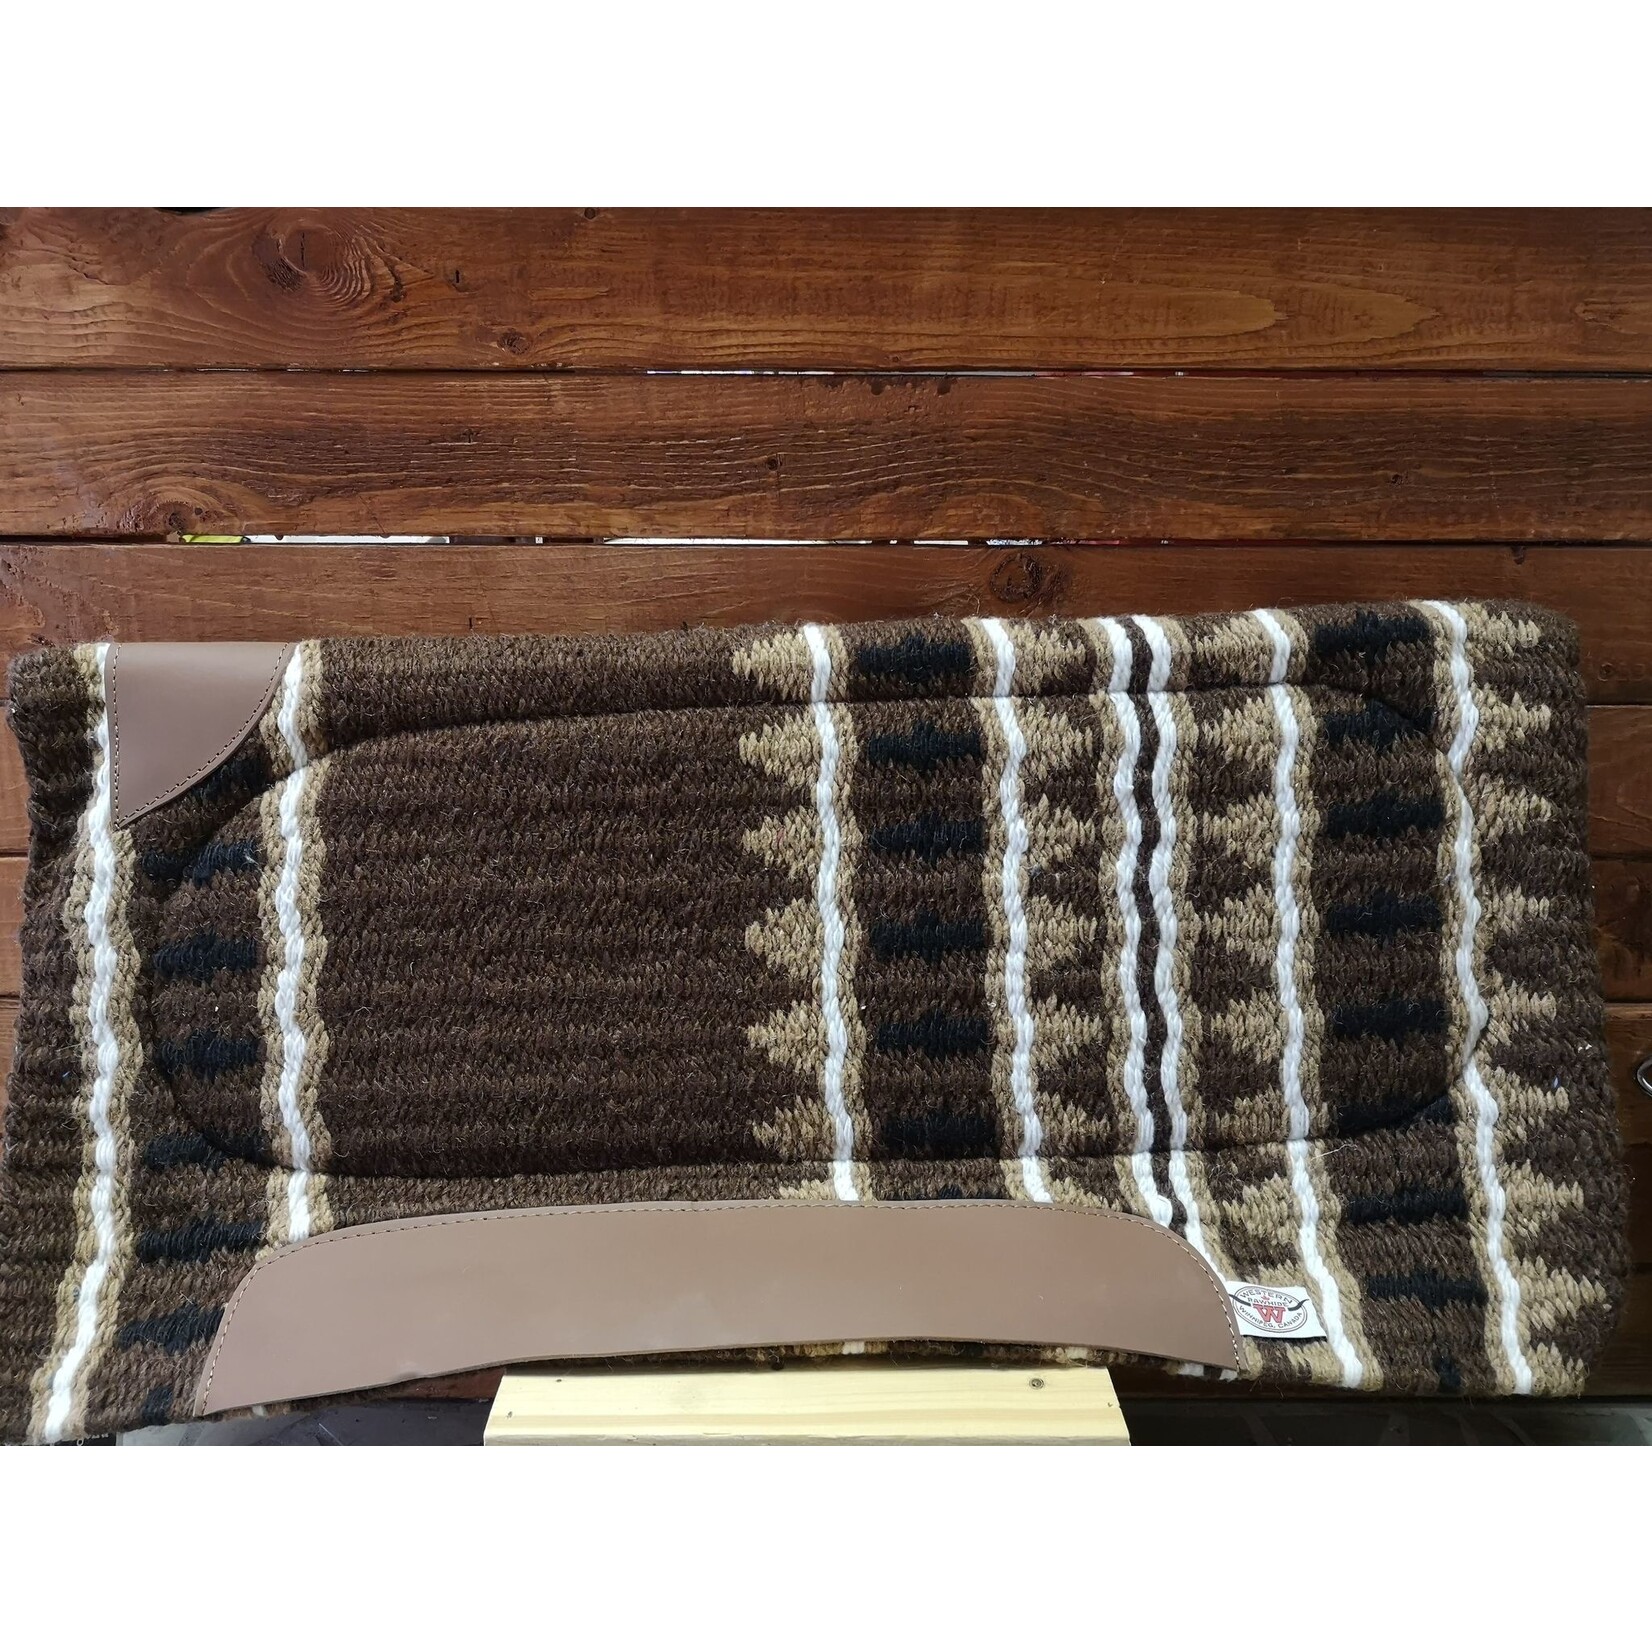 Western Rawhide coussin en laine avec système à deux panneaux 32 x 32 brun, sable, noir et blanc